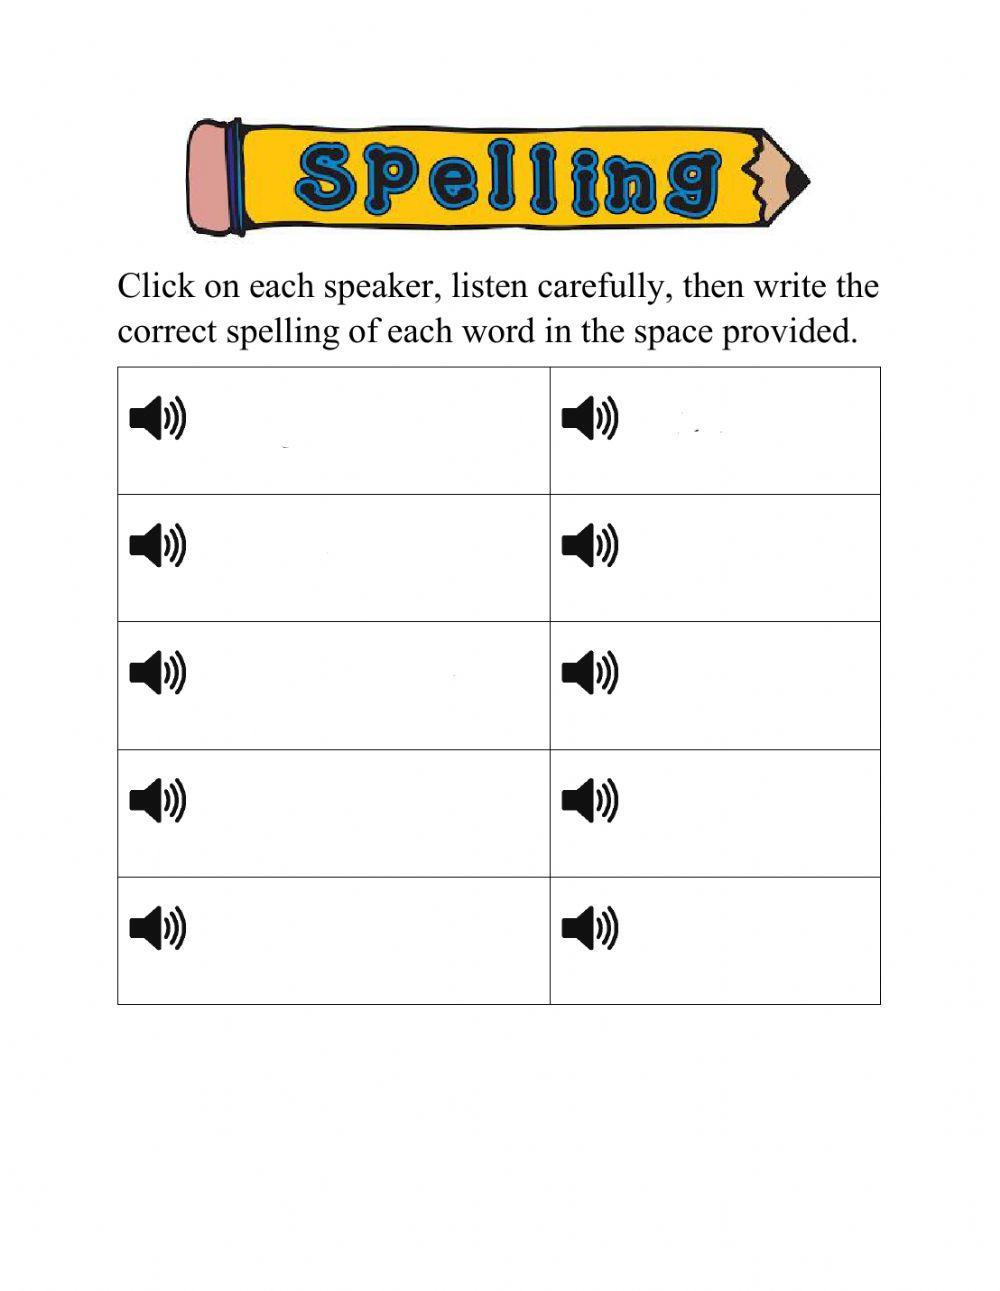 1st spelling test